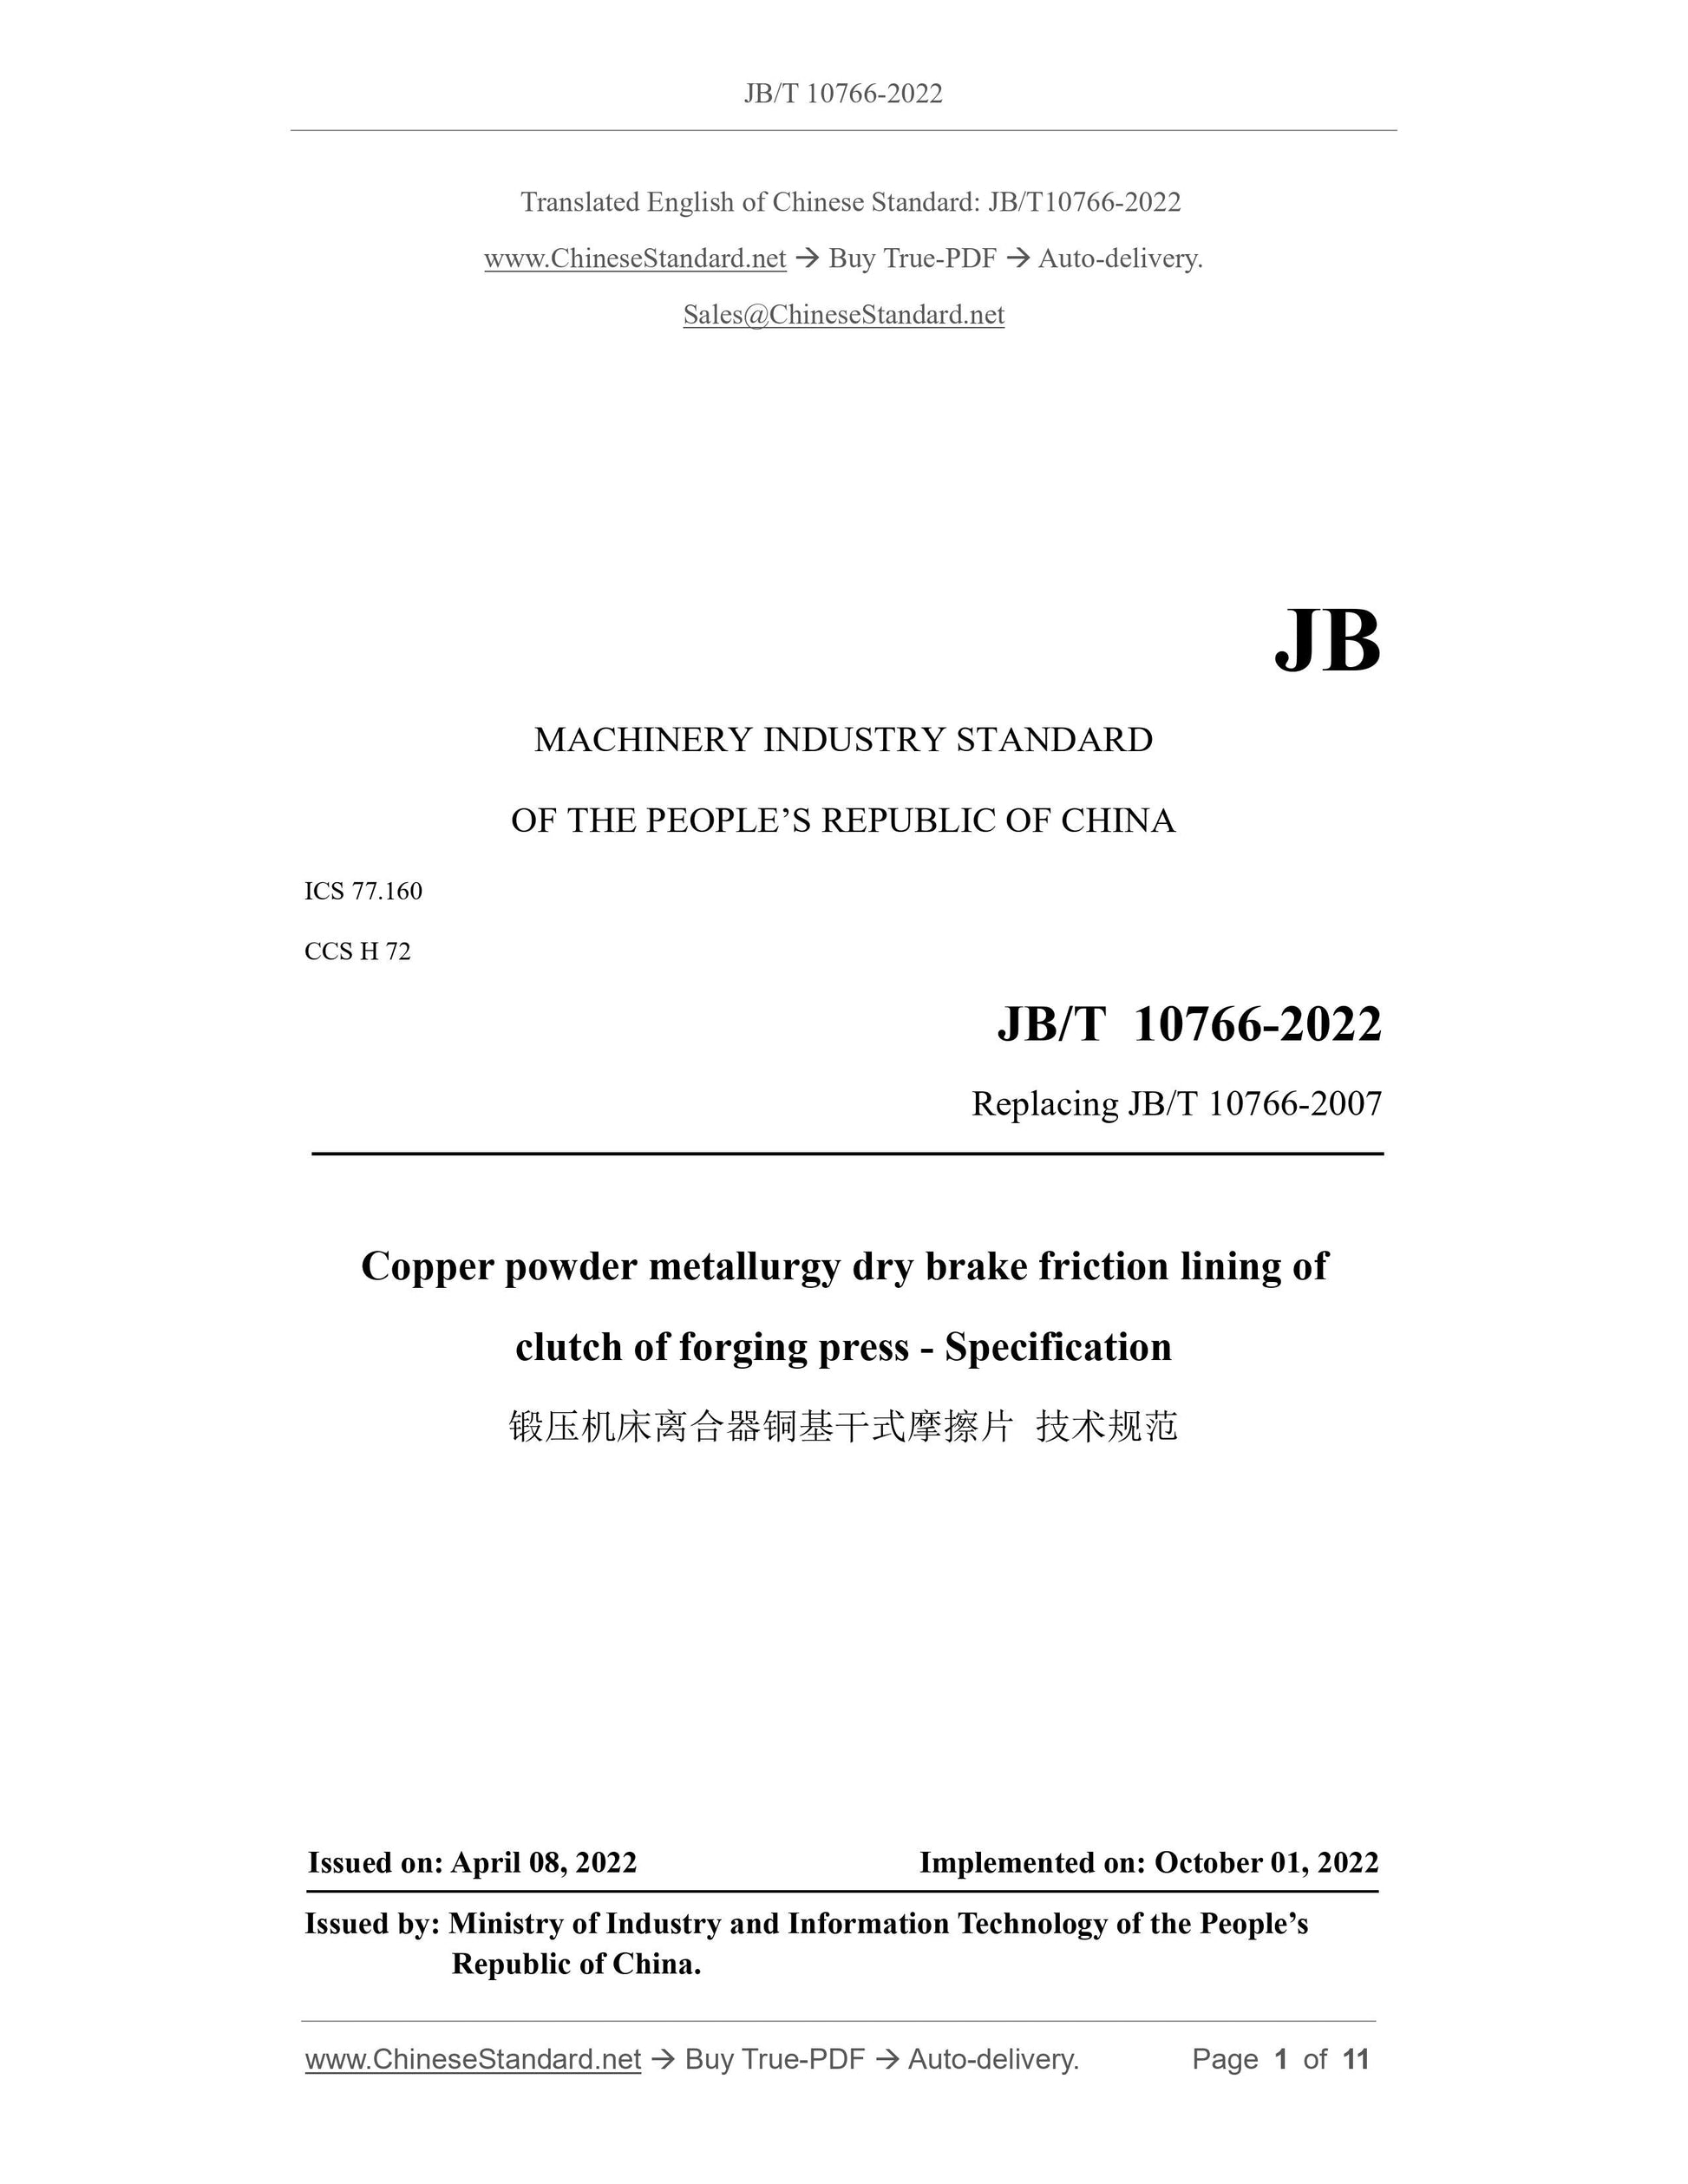 JB/T 10766-2022 Page 1